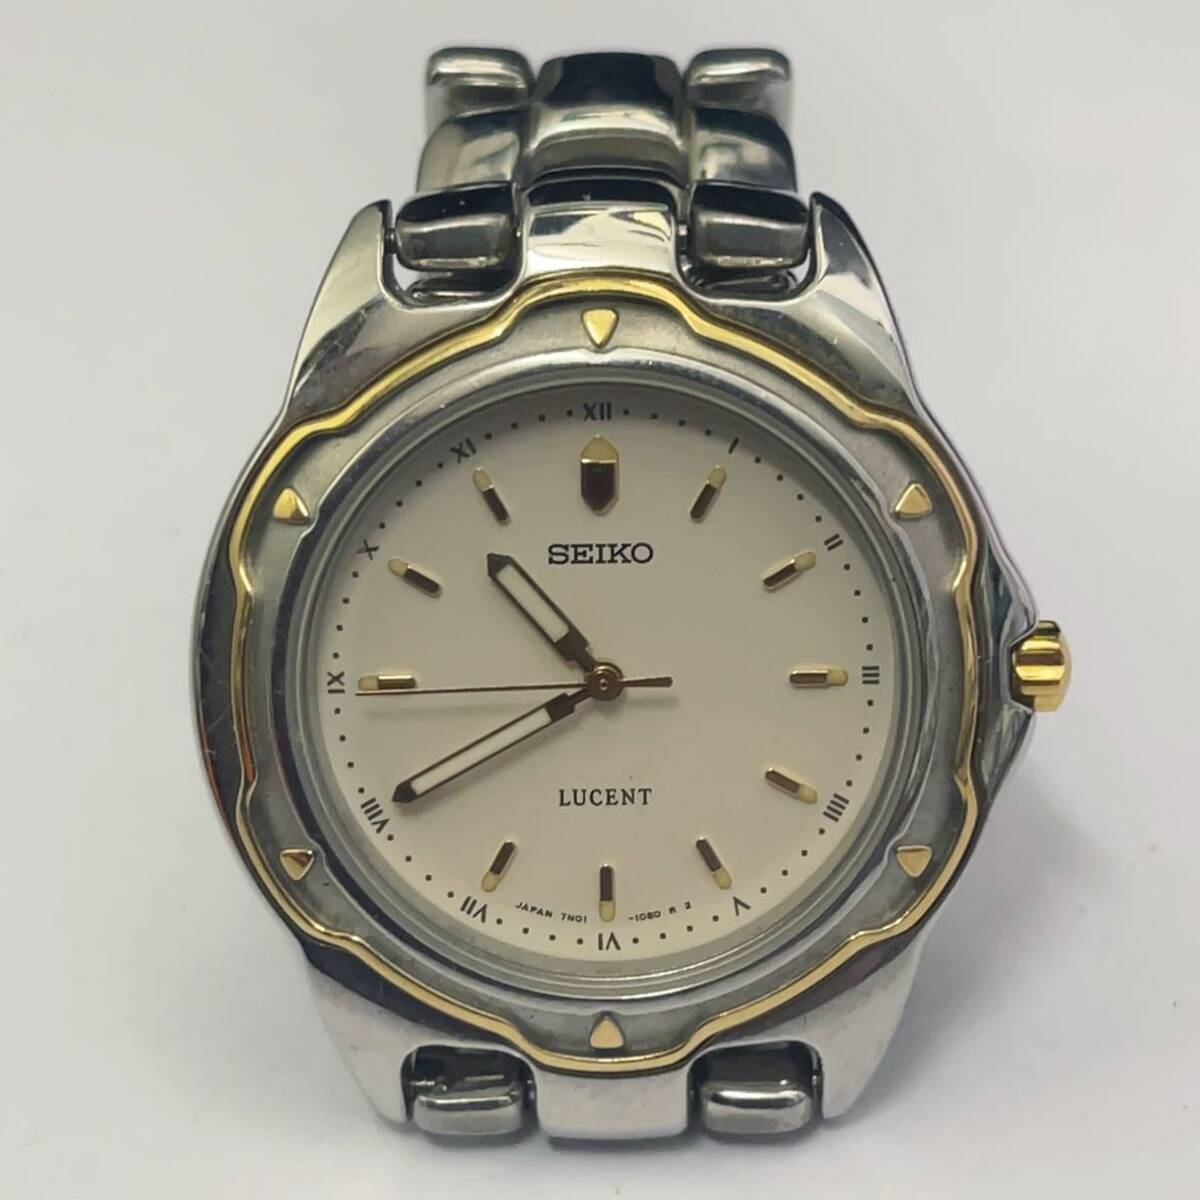 SEIKO セイコー LUCENT メンズ腕時計 デイト クォーツ コンビカラー ホワイト文字盤 7N01-6750 稼働品の画像1